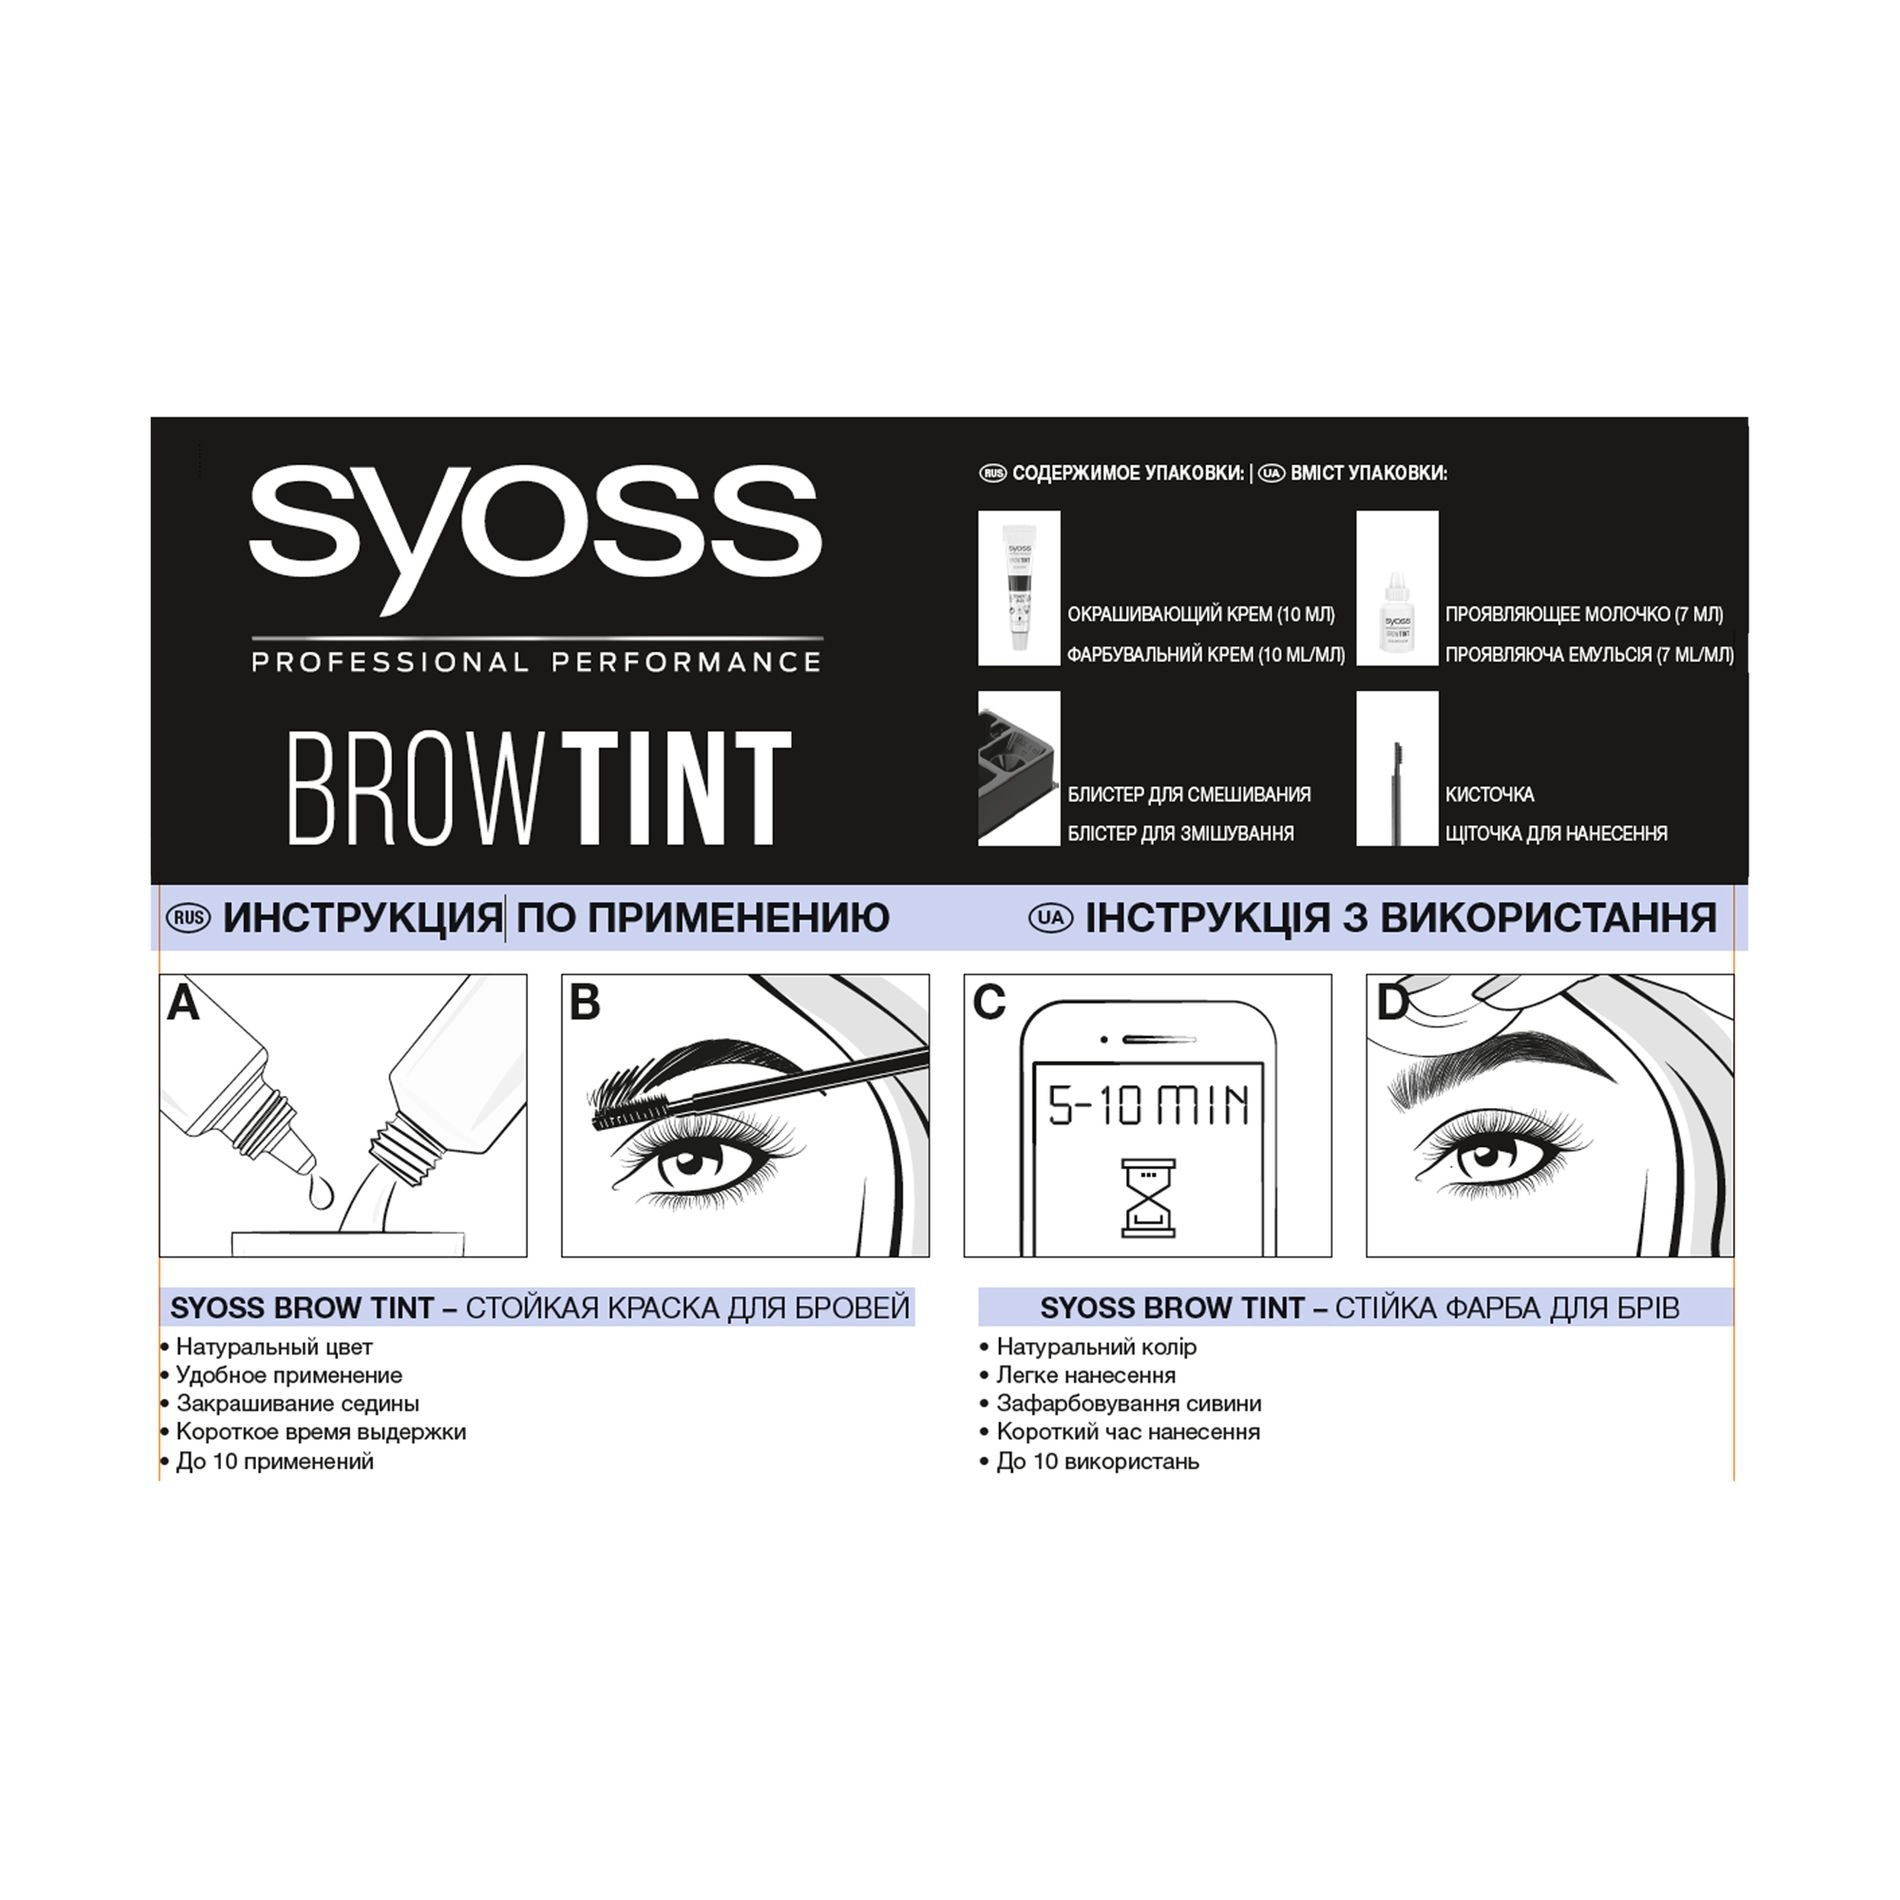 Стійка фарба для брів - SYOSS Brow Tint, 3-1 Графітовий чорний, 17 мл - фото N4